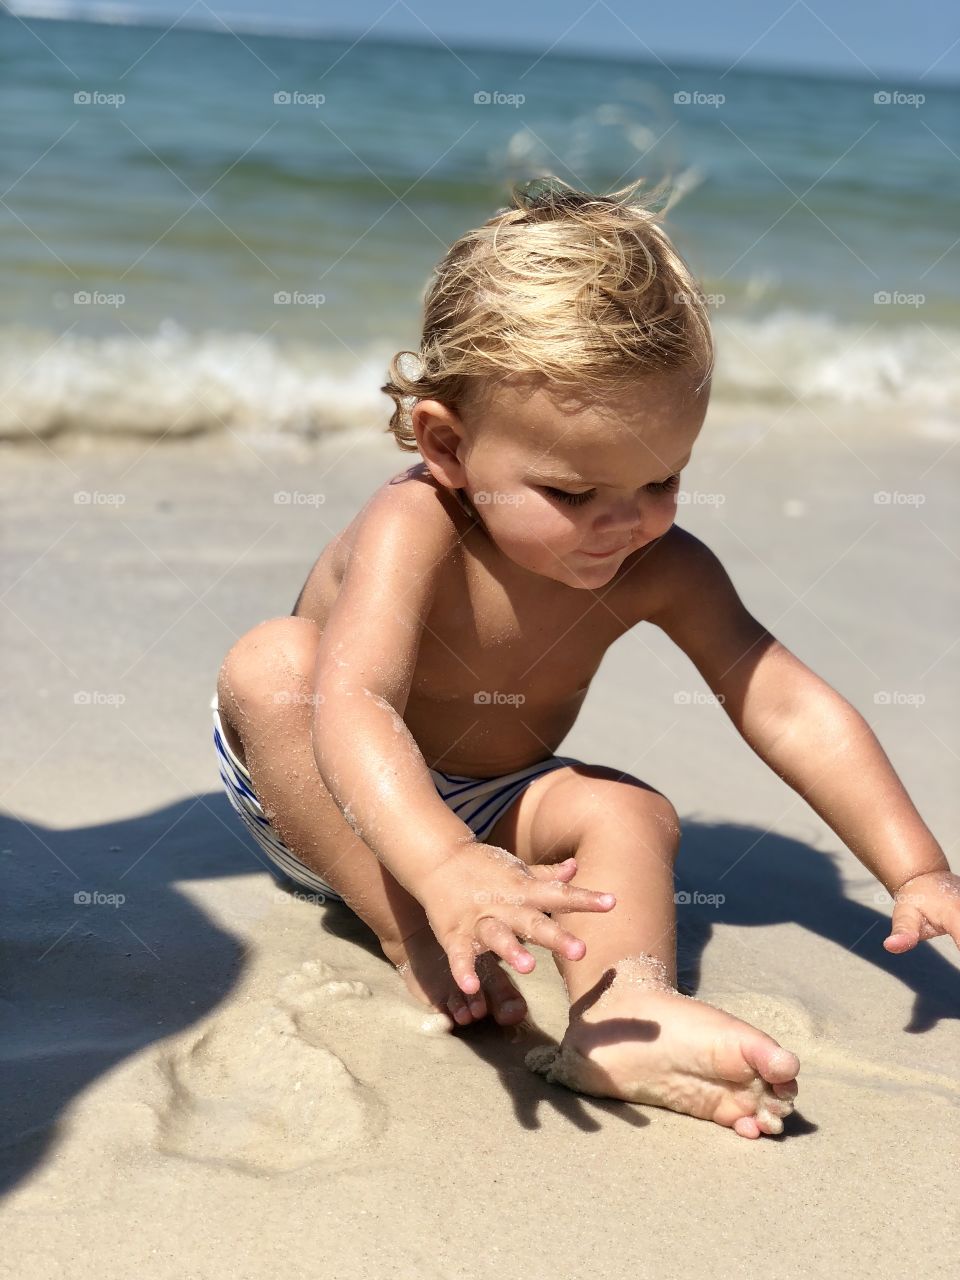 Blonde sandy beach baby. 